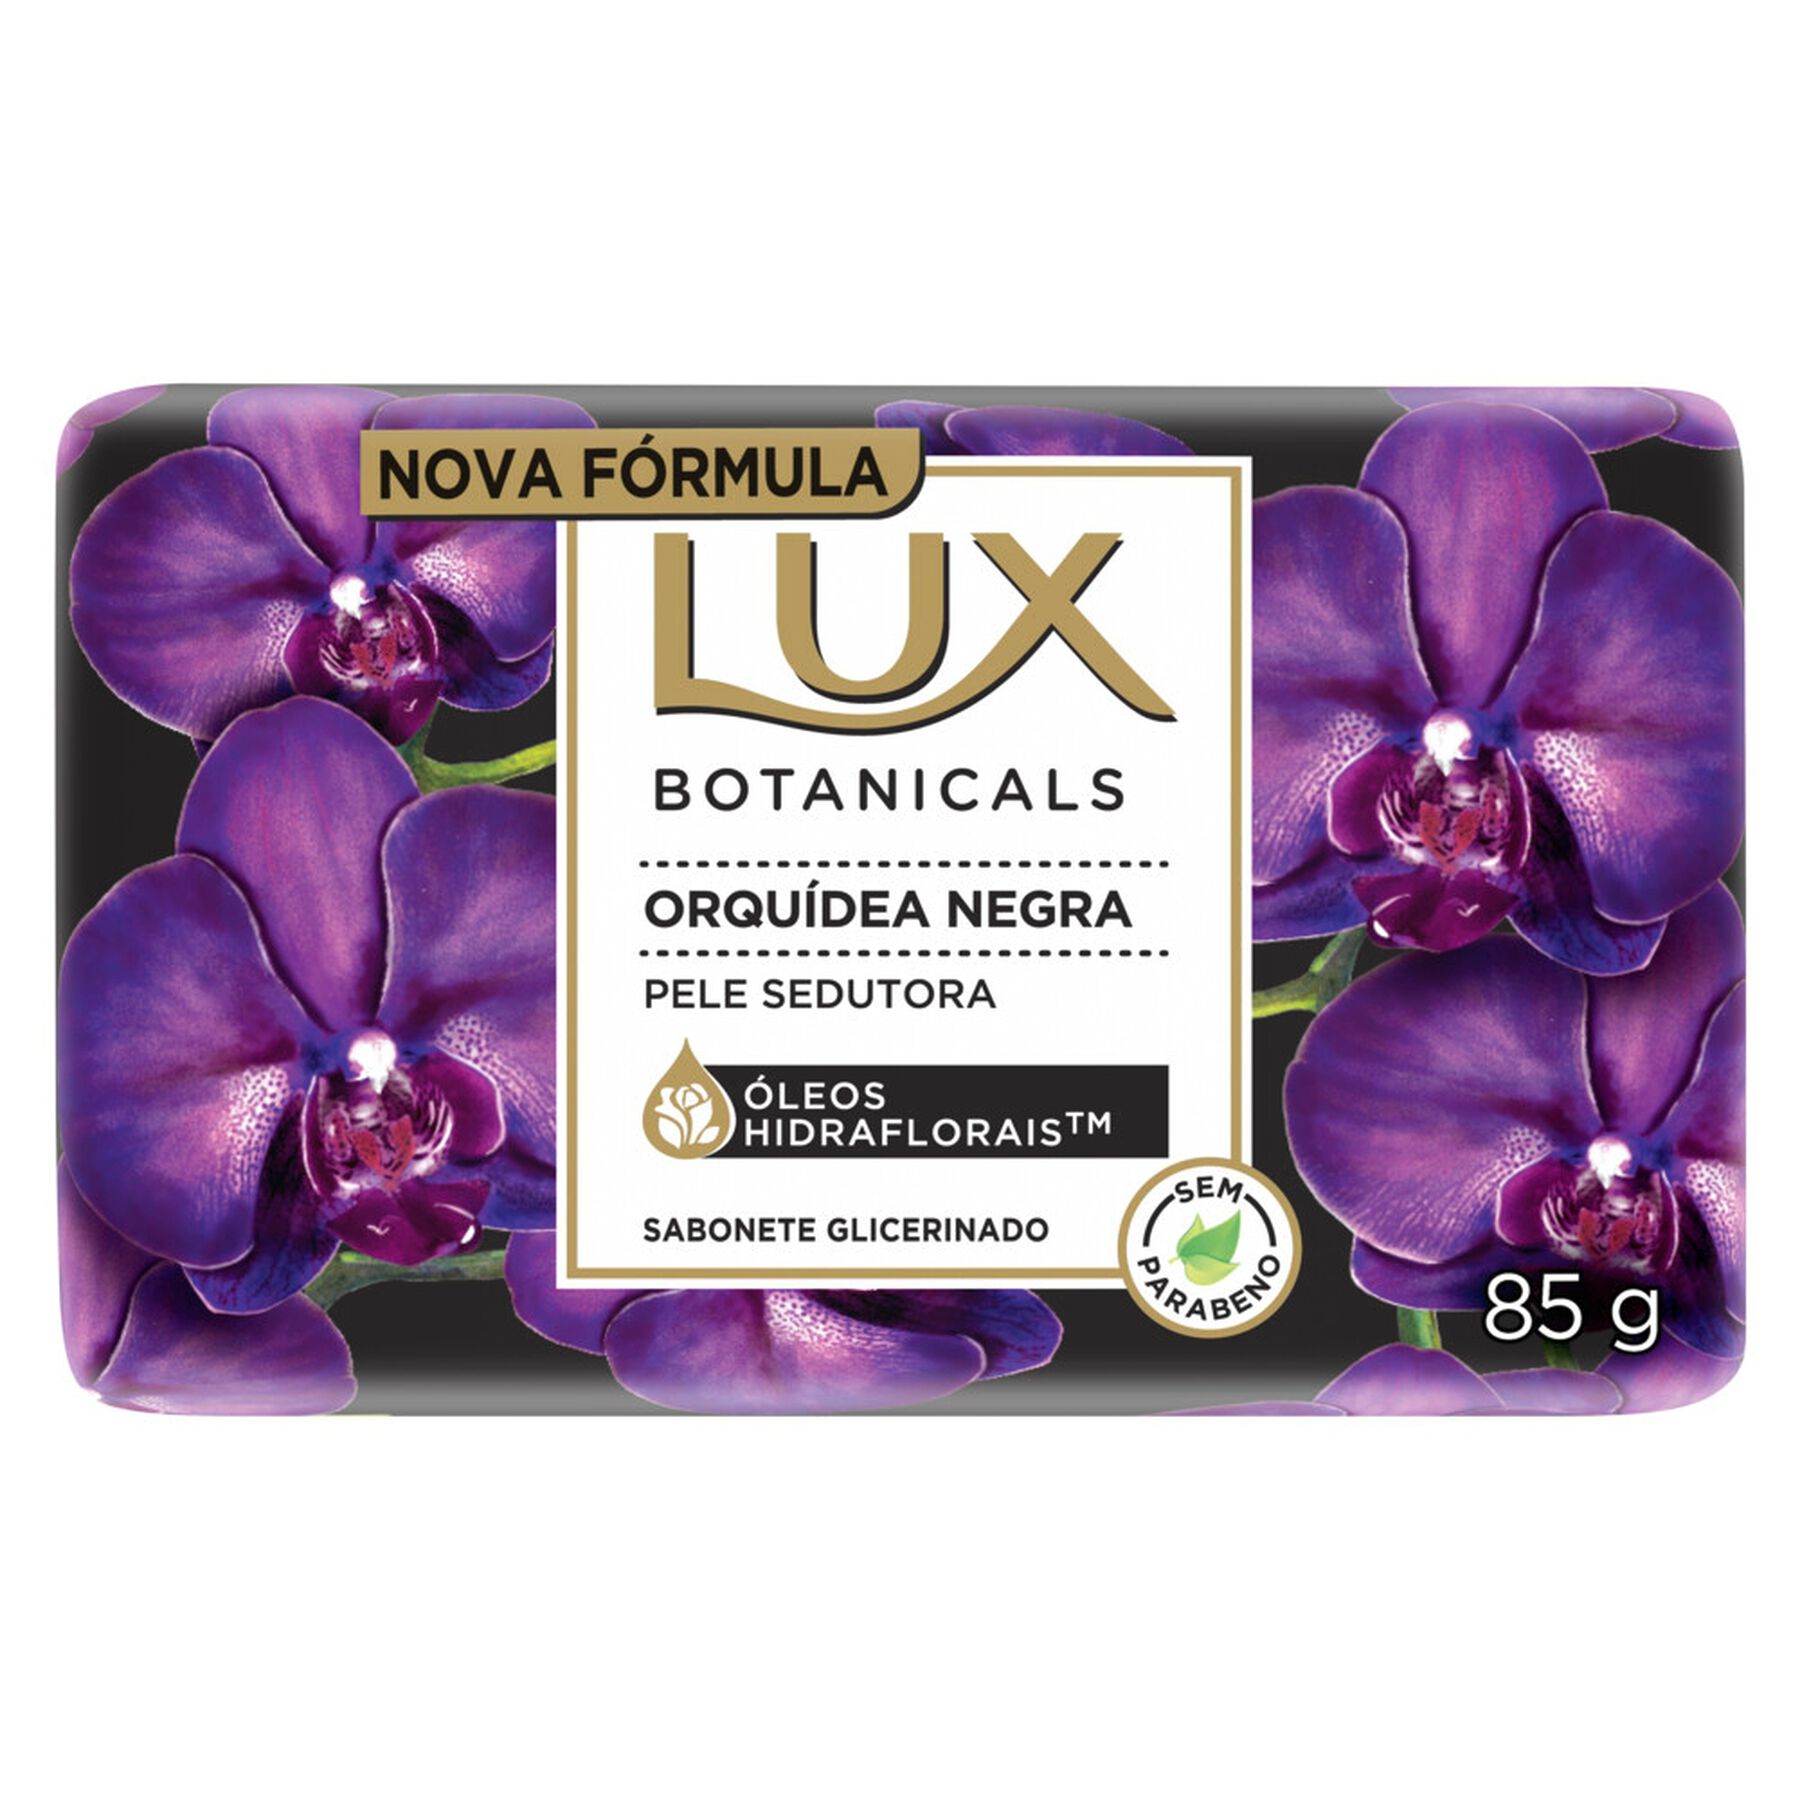 Sabonete em Barra Glicerinado Orquídea Negra Lux Botanicals Cartucho 85g